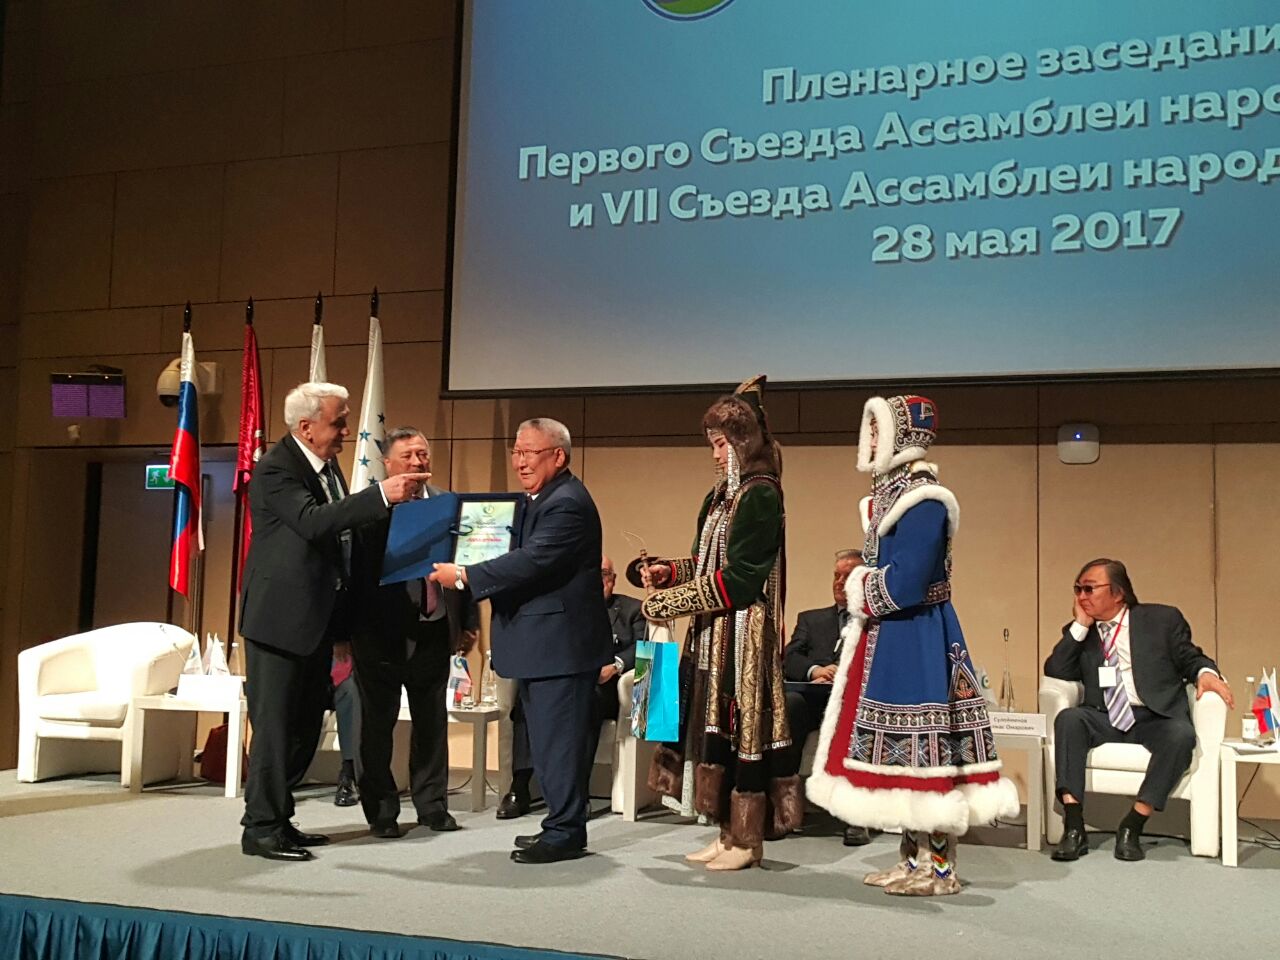 Первый съезд Ассамблеи народов Евразии завершил свою работу